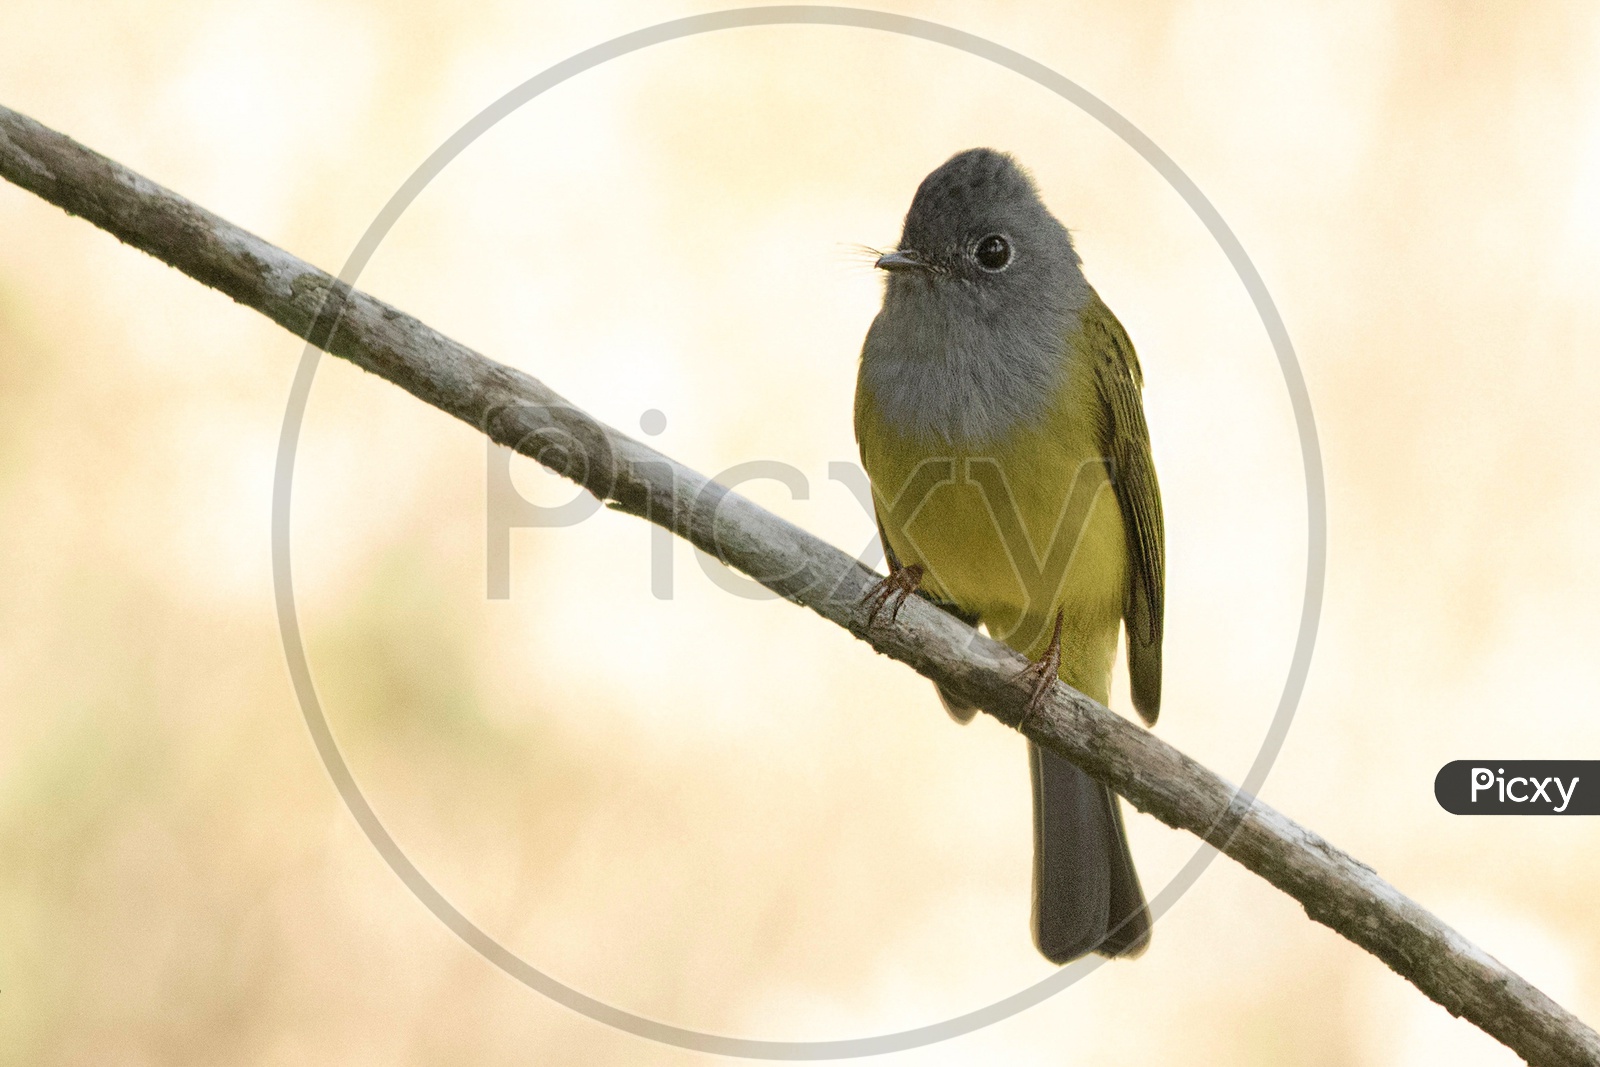 Canary Flycatcher